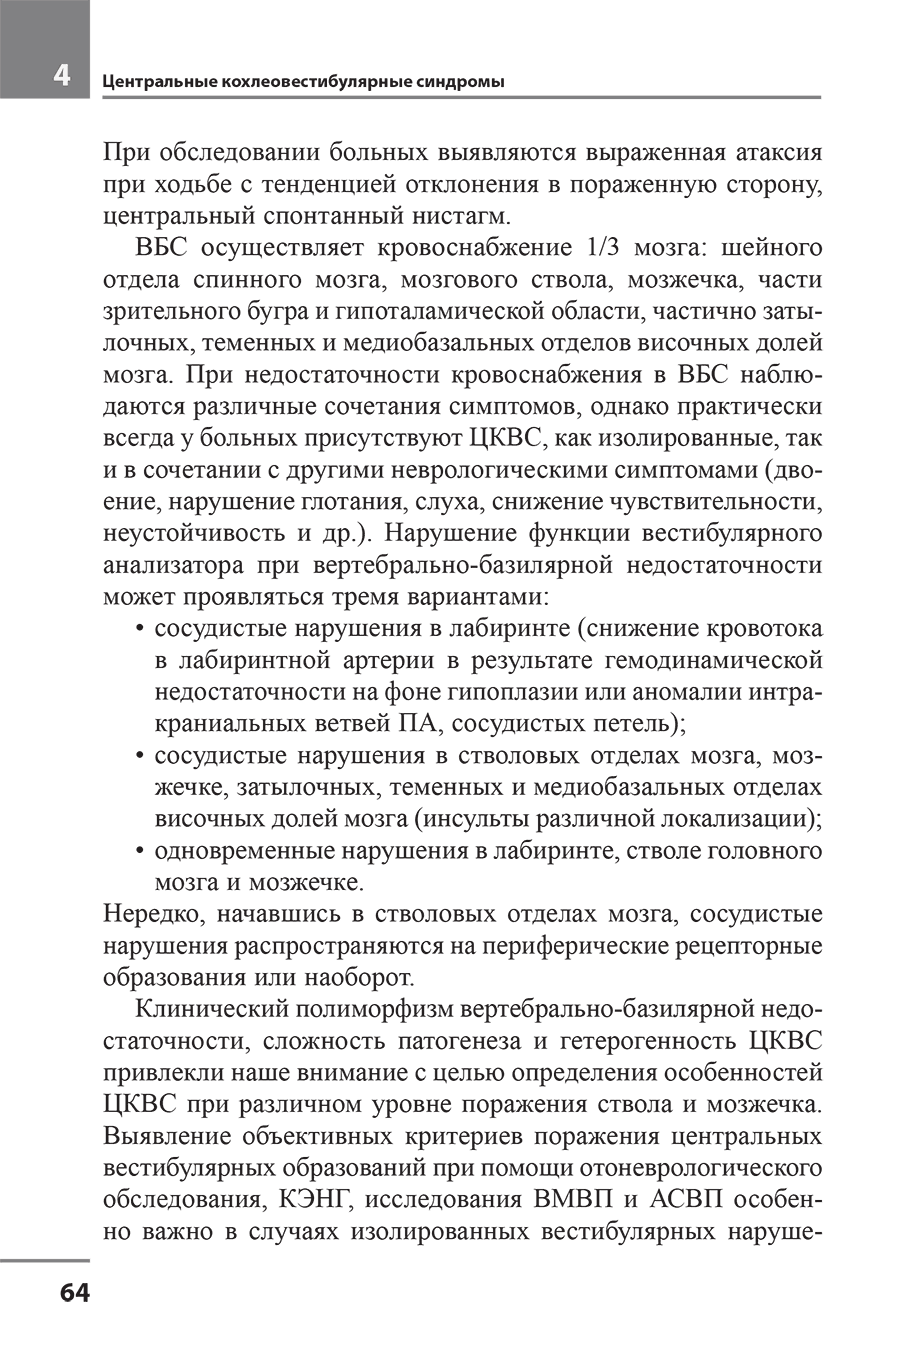 Пример страницы из книги "Головокружение. Отоневрологические аспекты" - Алексеева Н. С.